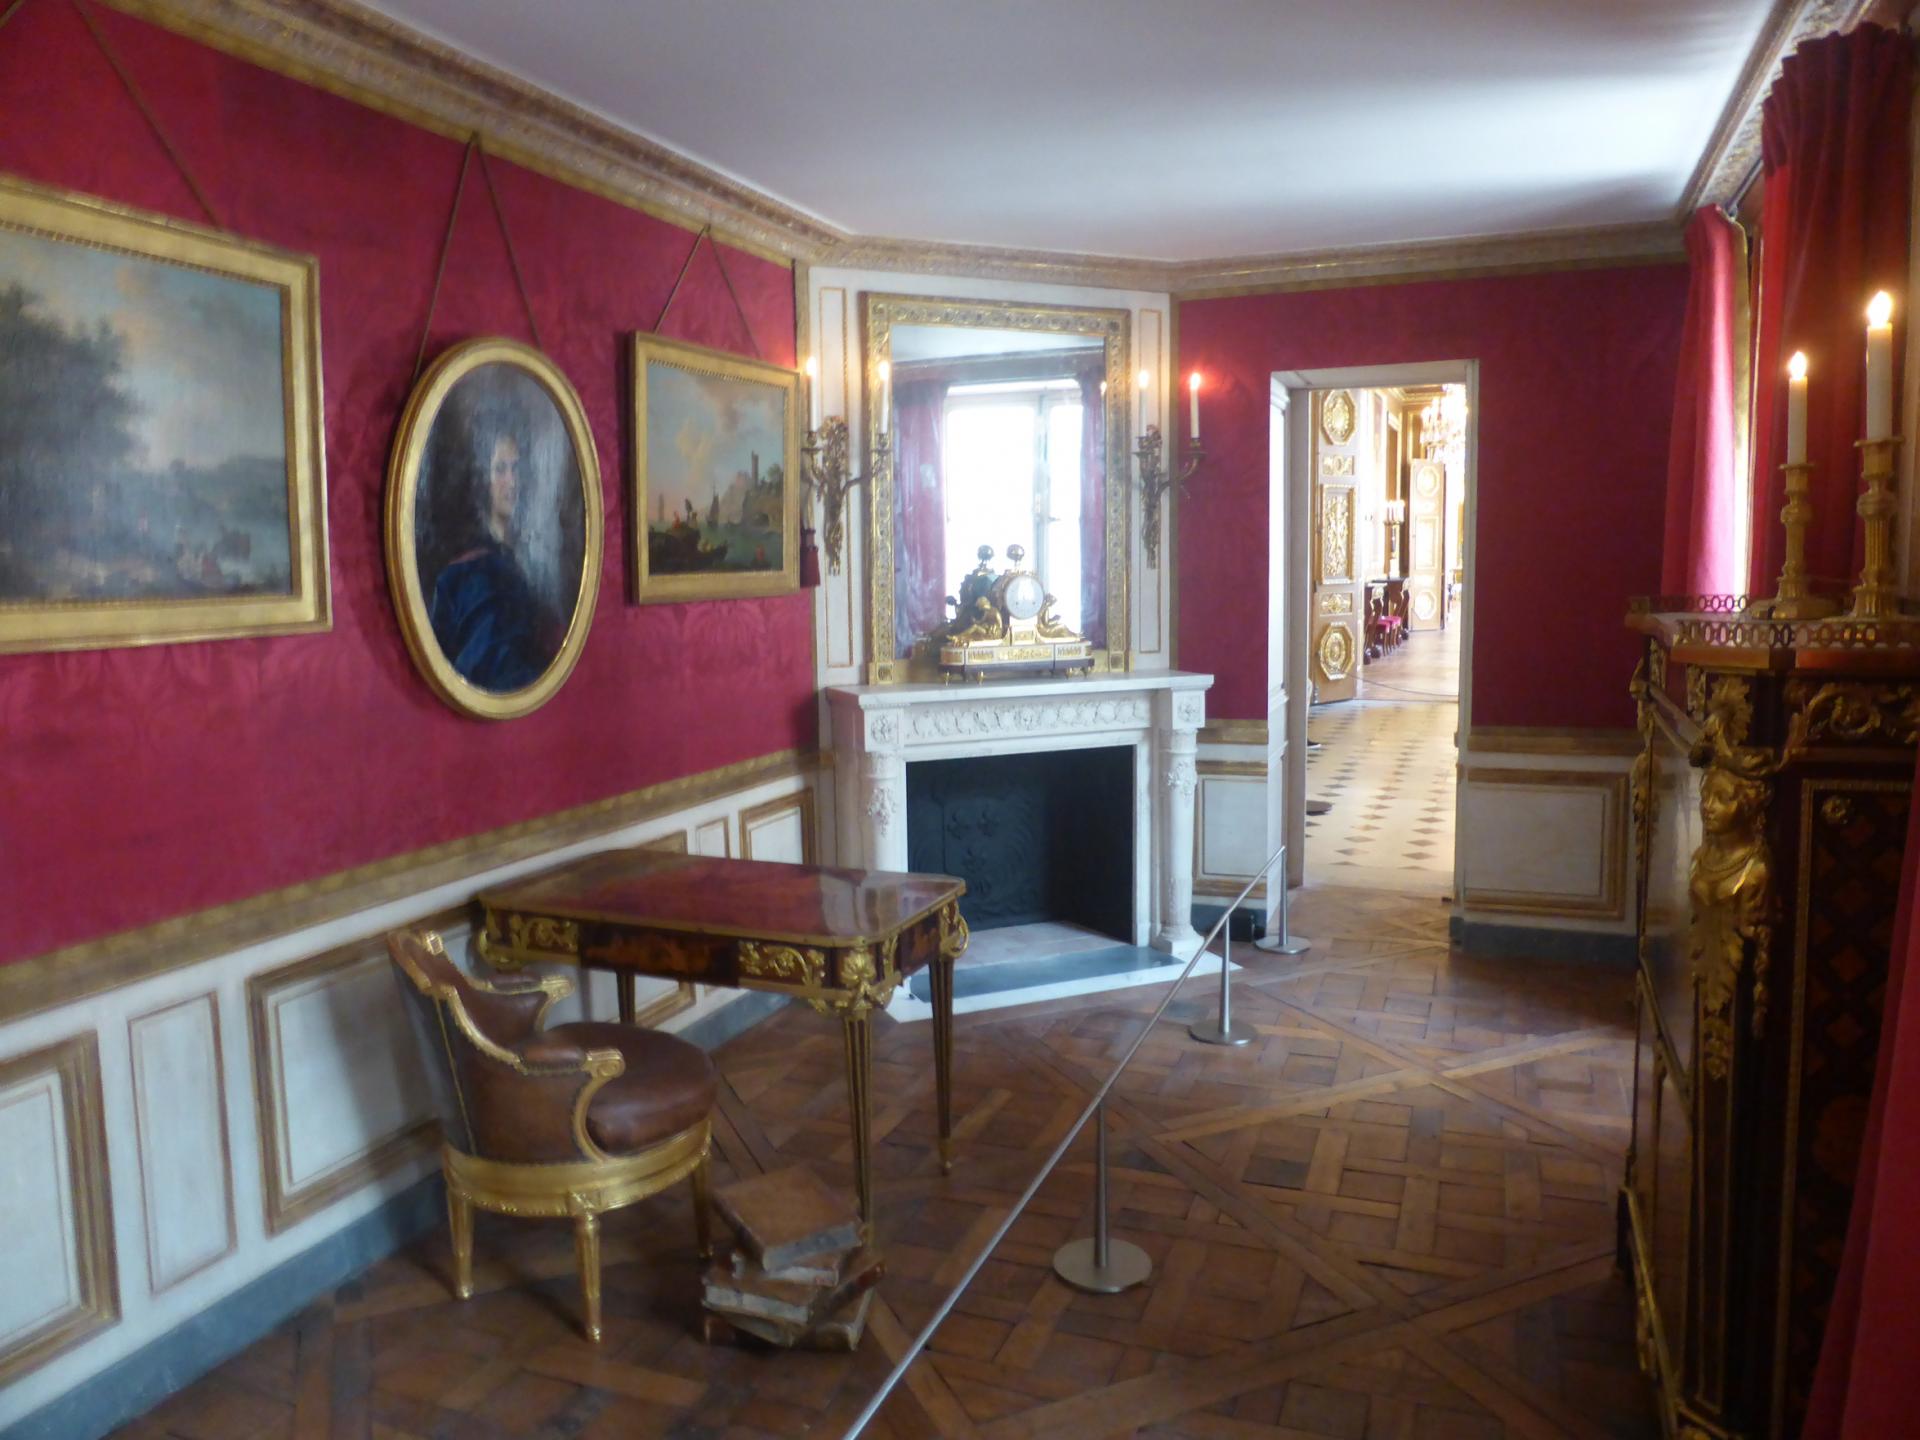 Cabinet de M. de Fontanieu près du grand escalier, cl. Ph. Cachau